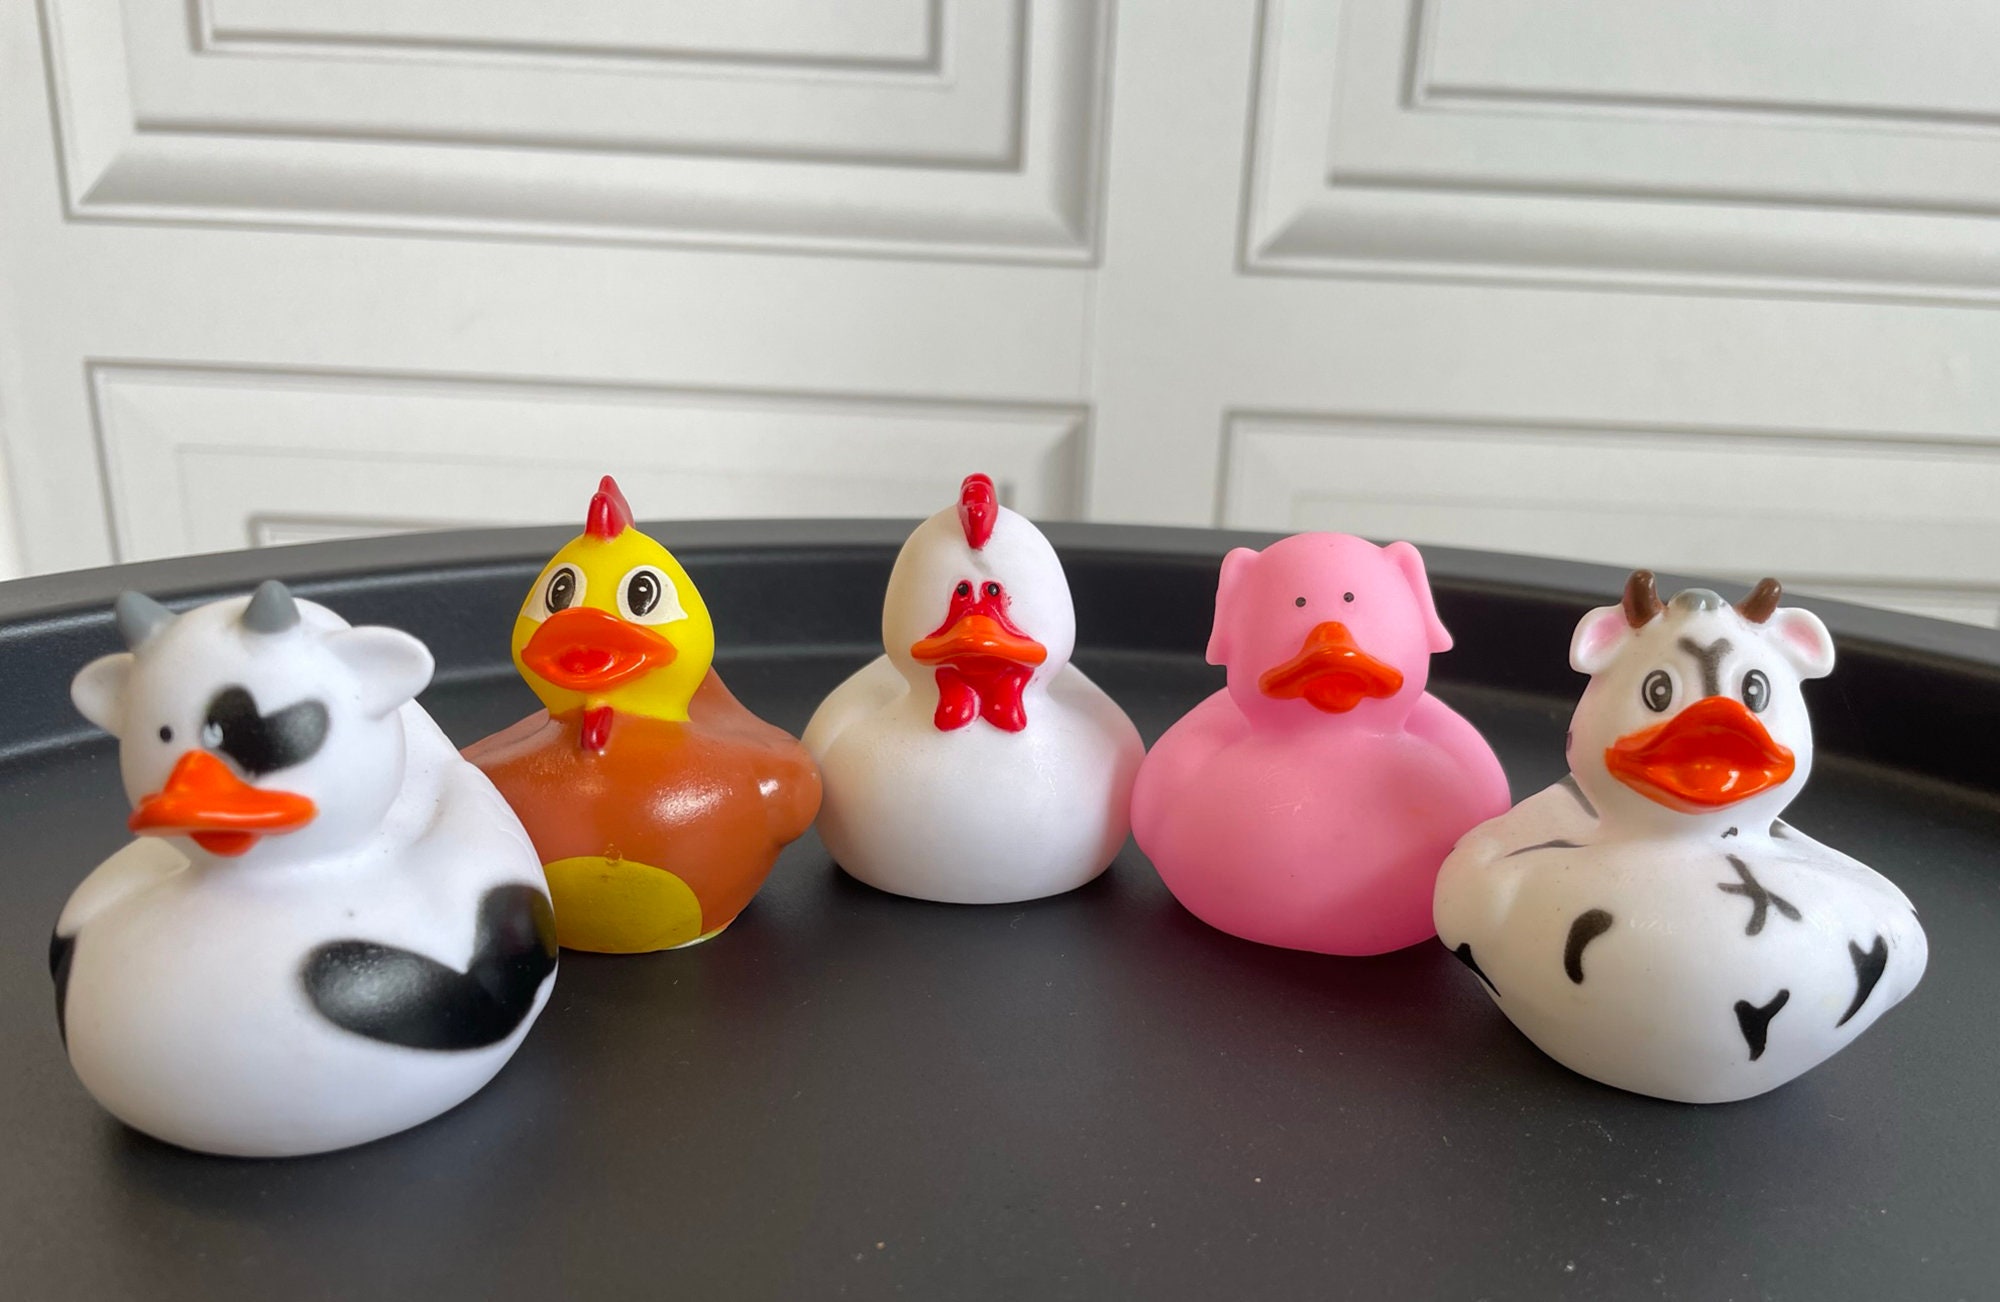 Farmyard 5 X Mini Rubber Duck Set: Fun Gift, Wedding Favour, Duck Race Etc.  Cute Farm Themed Ducks in Disguise Cows, Chickens, Pig 